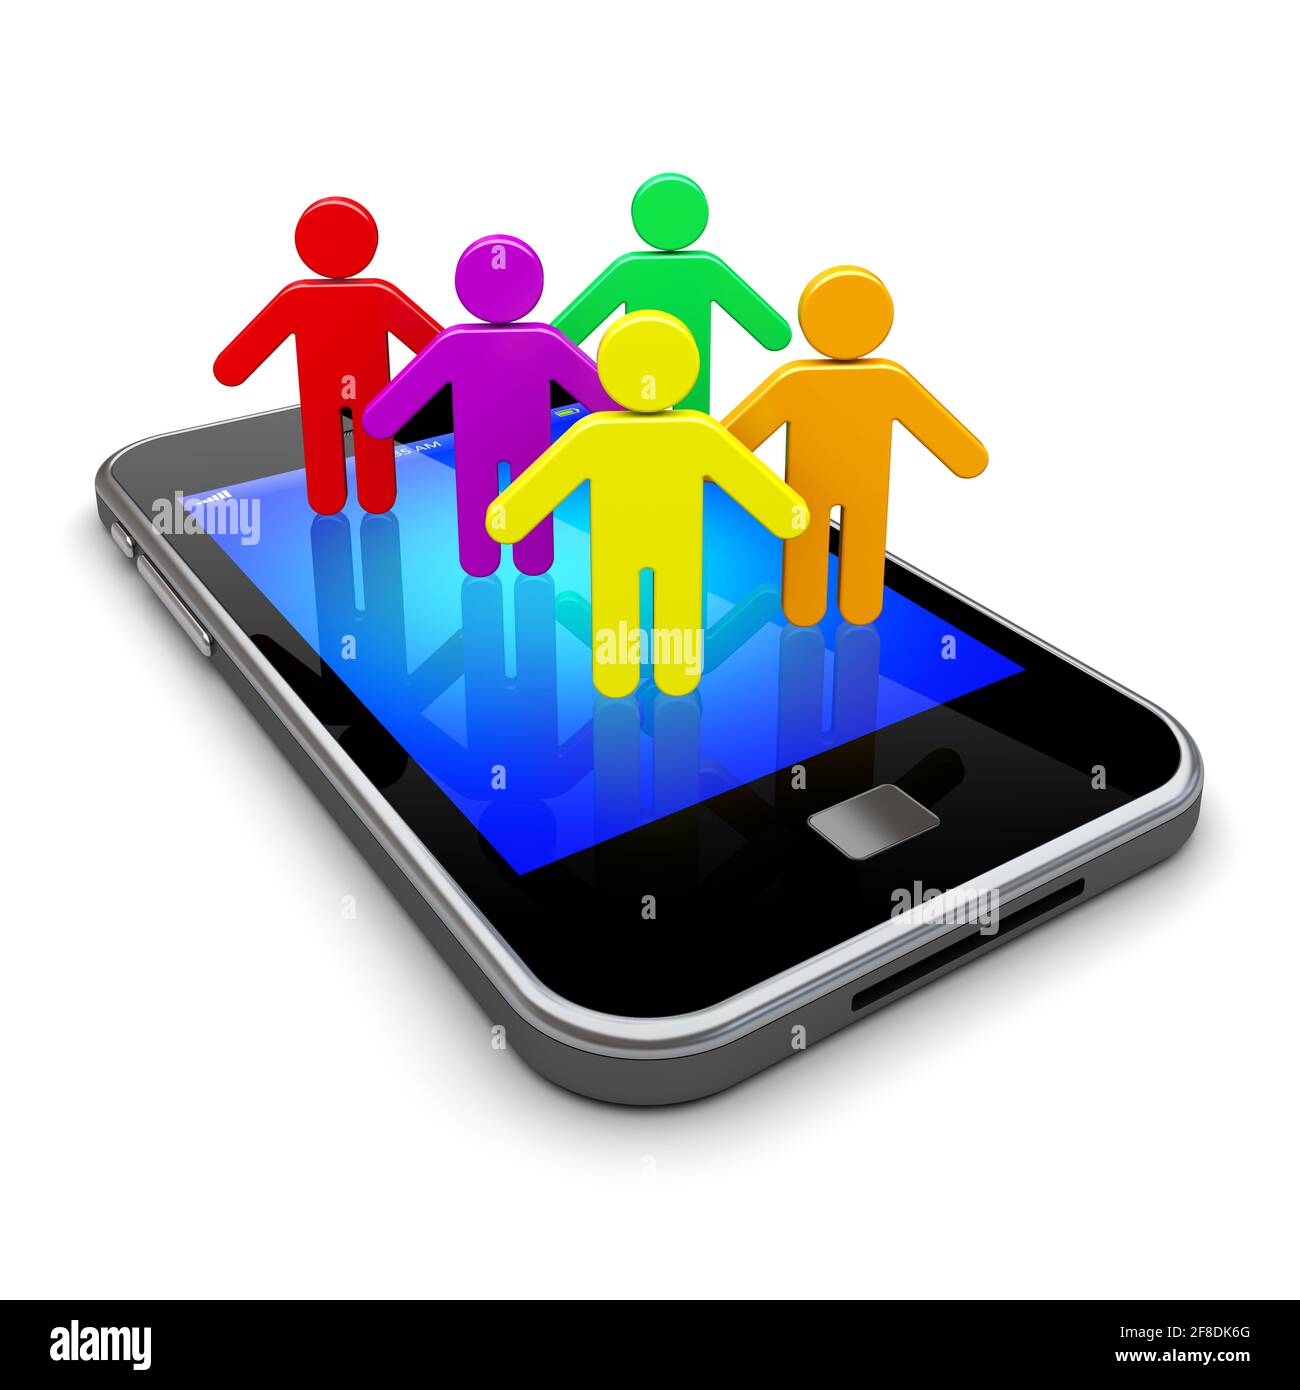 Mobiles Smartphone mit Social-Network-Menschen auf einem Bildschirm. Konzept der Kommunikations- und Medientechnik Stockfoto